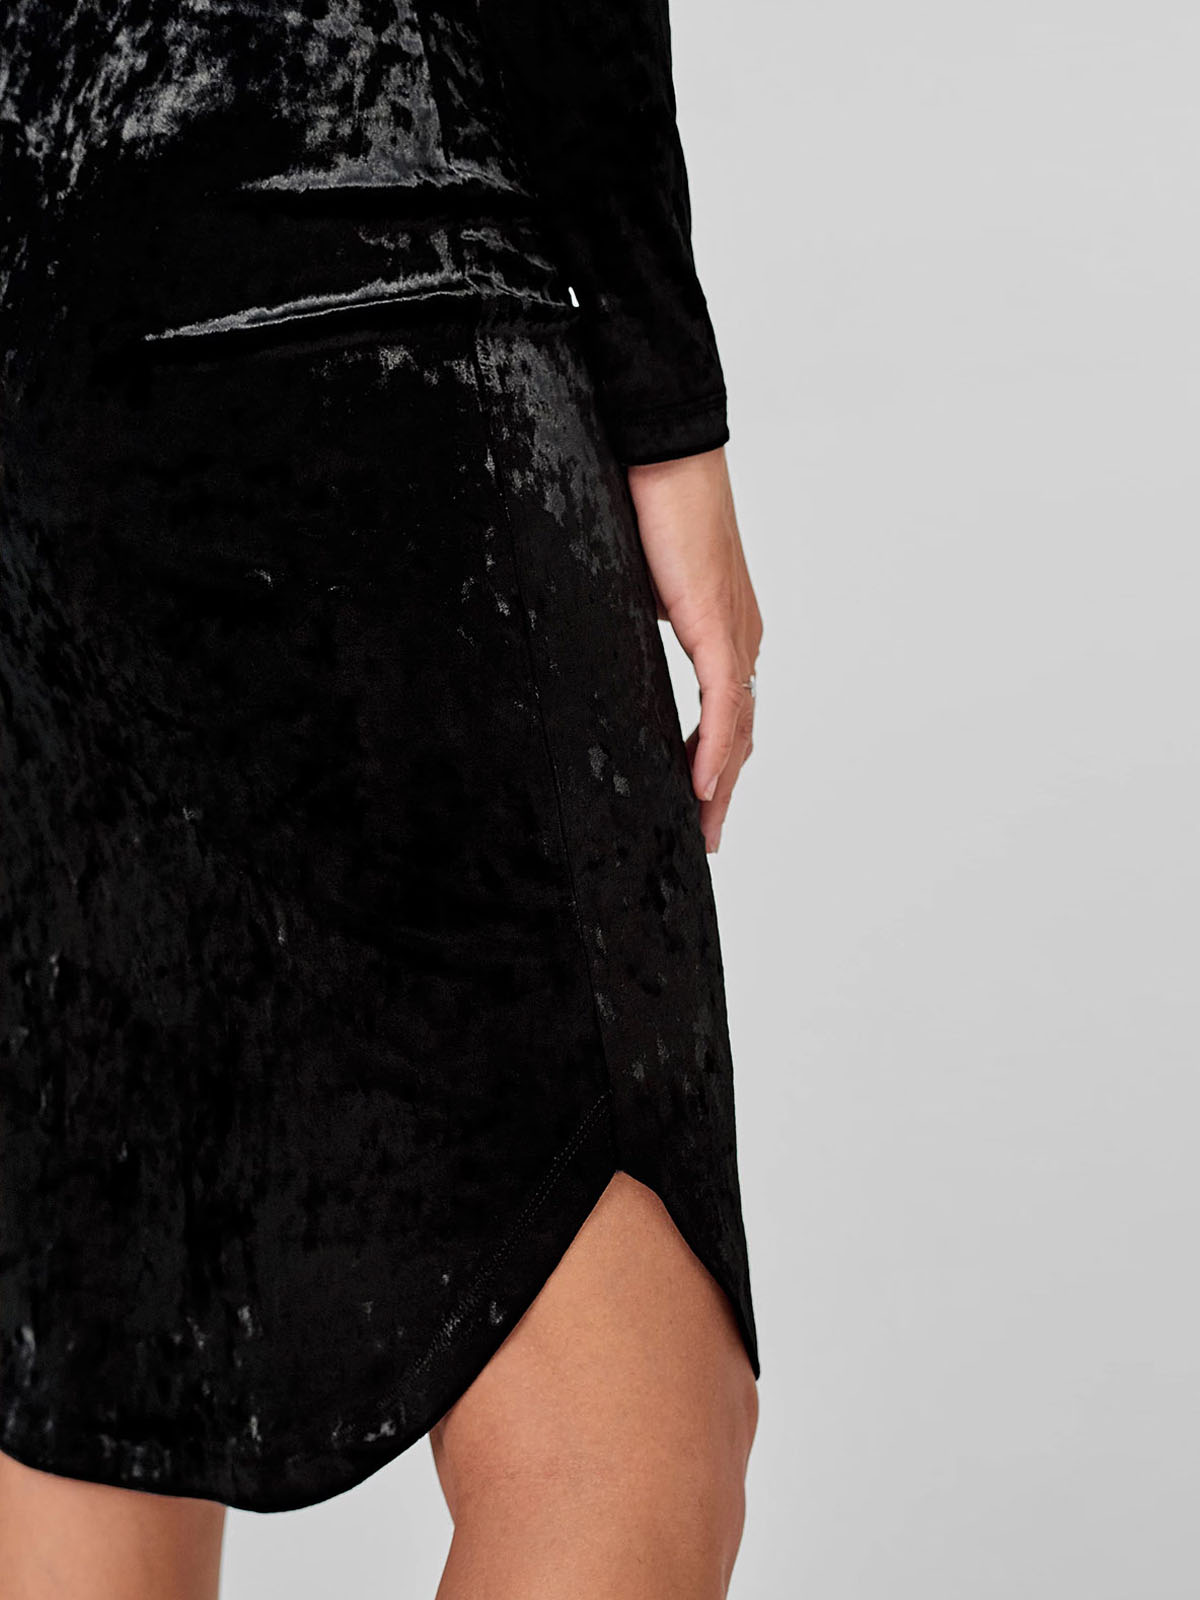 Ellos - - BLACK Fleur Velour Midi Dress - Plus Size 22 to 26 (EU 48 to 52)